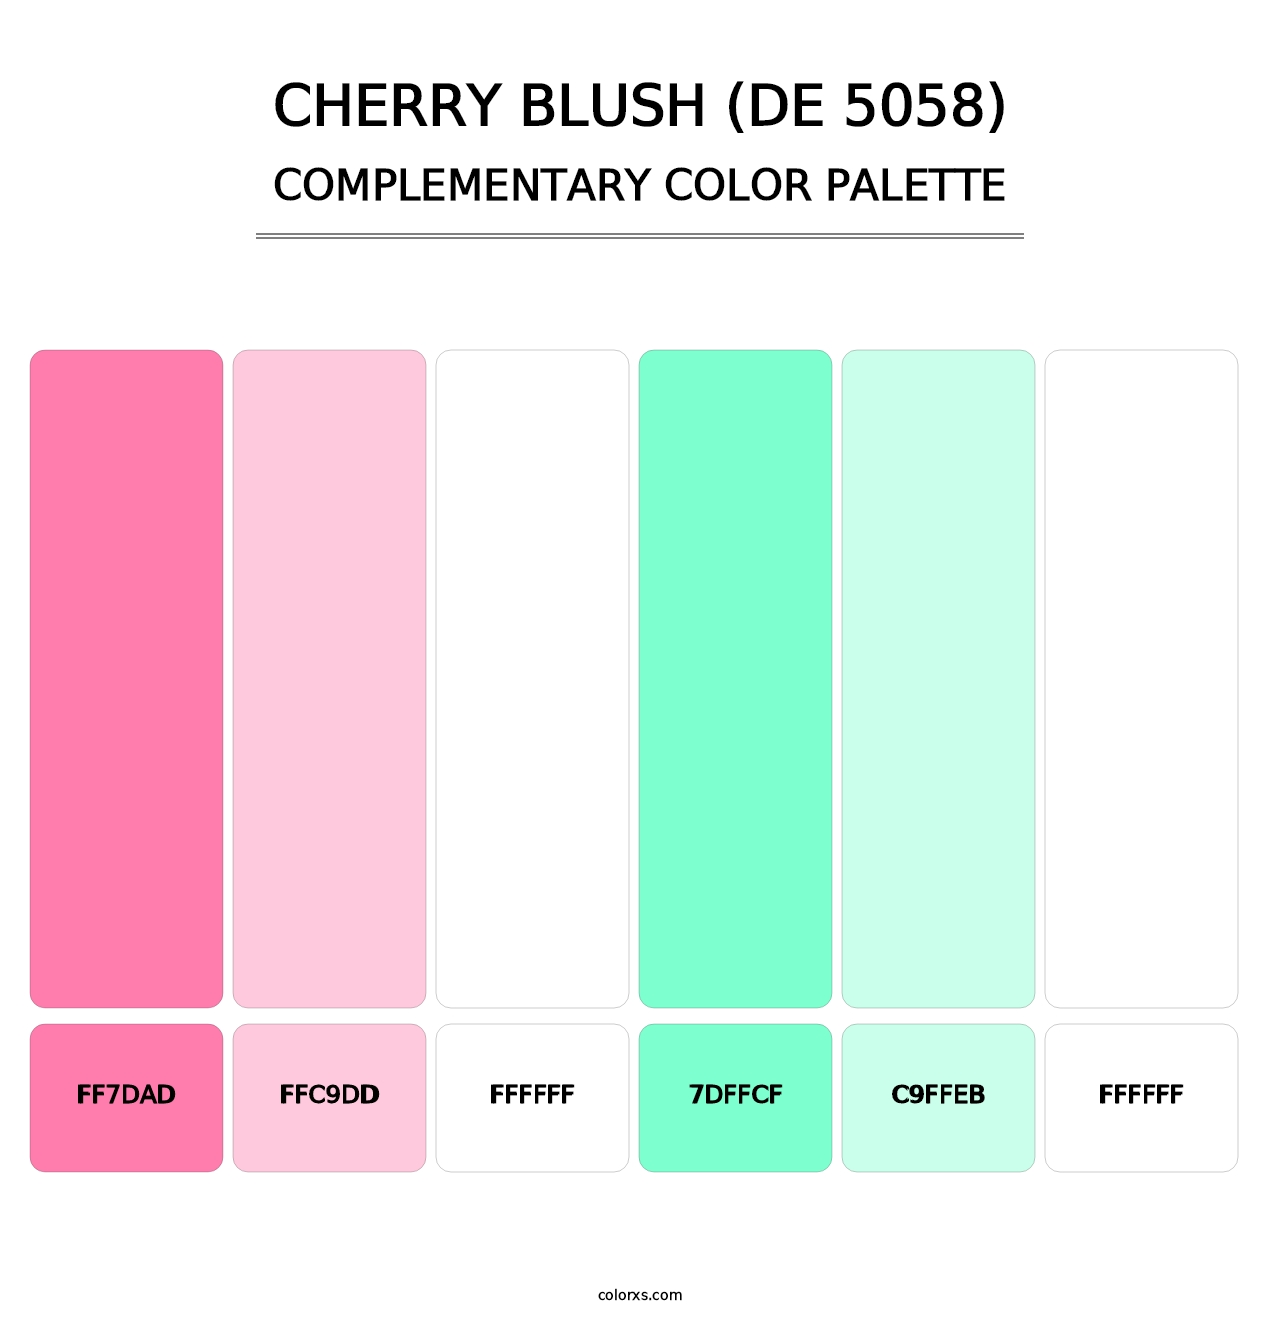 Cherry Blush (DE 5058) - Complementary Color Palette